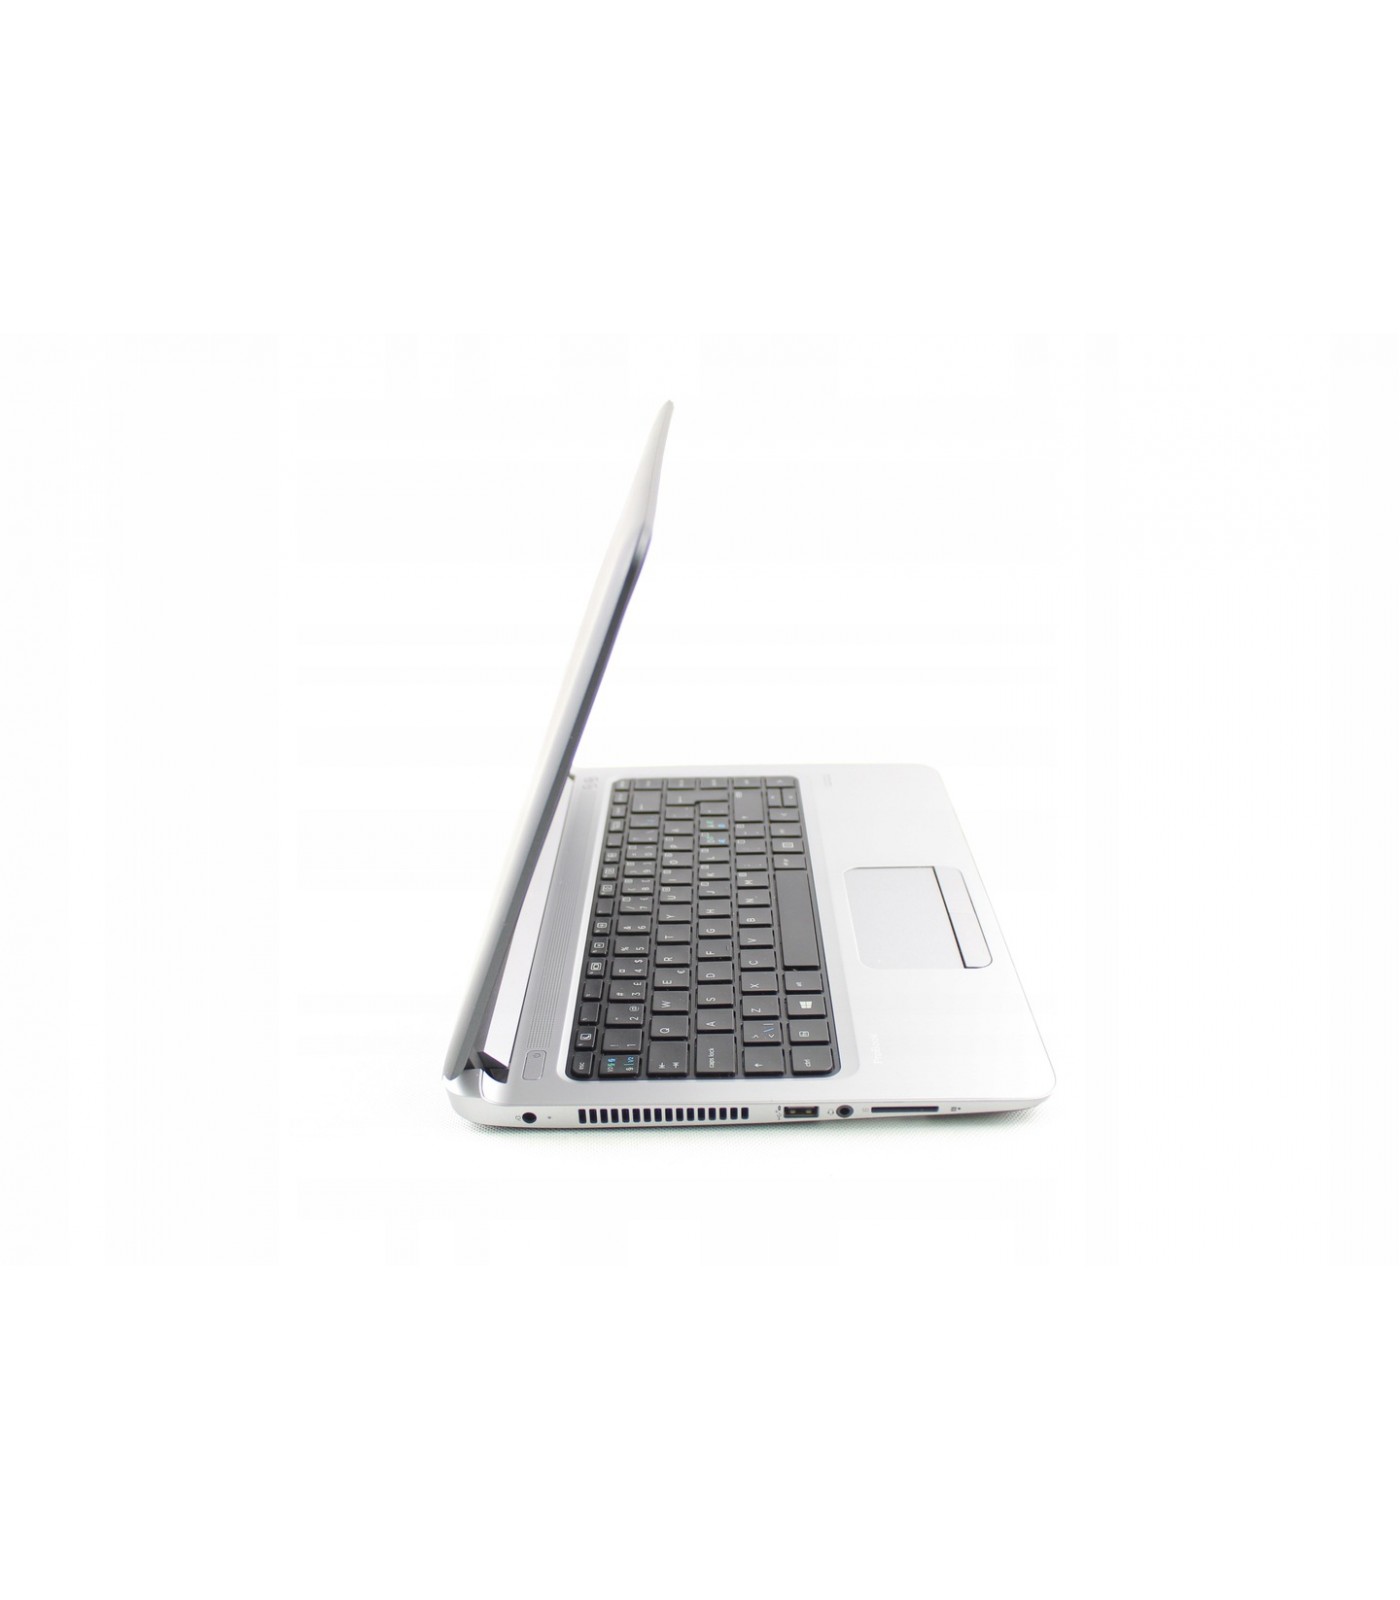 Poleasingowy laptop HP ProBook 430 G3 z Intel Core i3-6100U w klasie B.